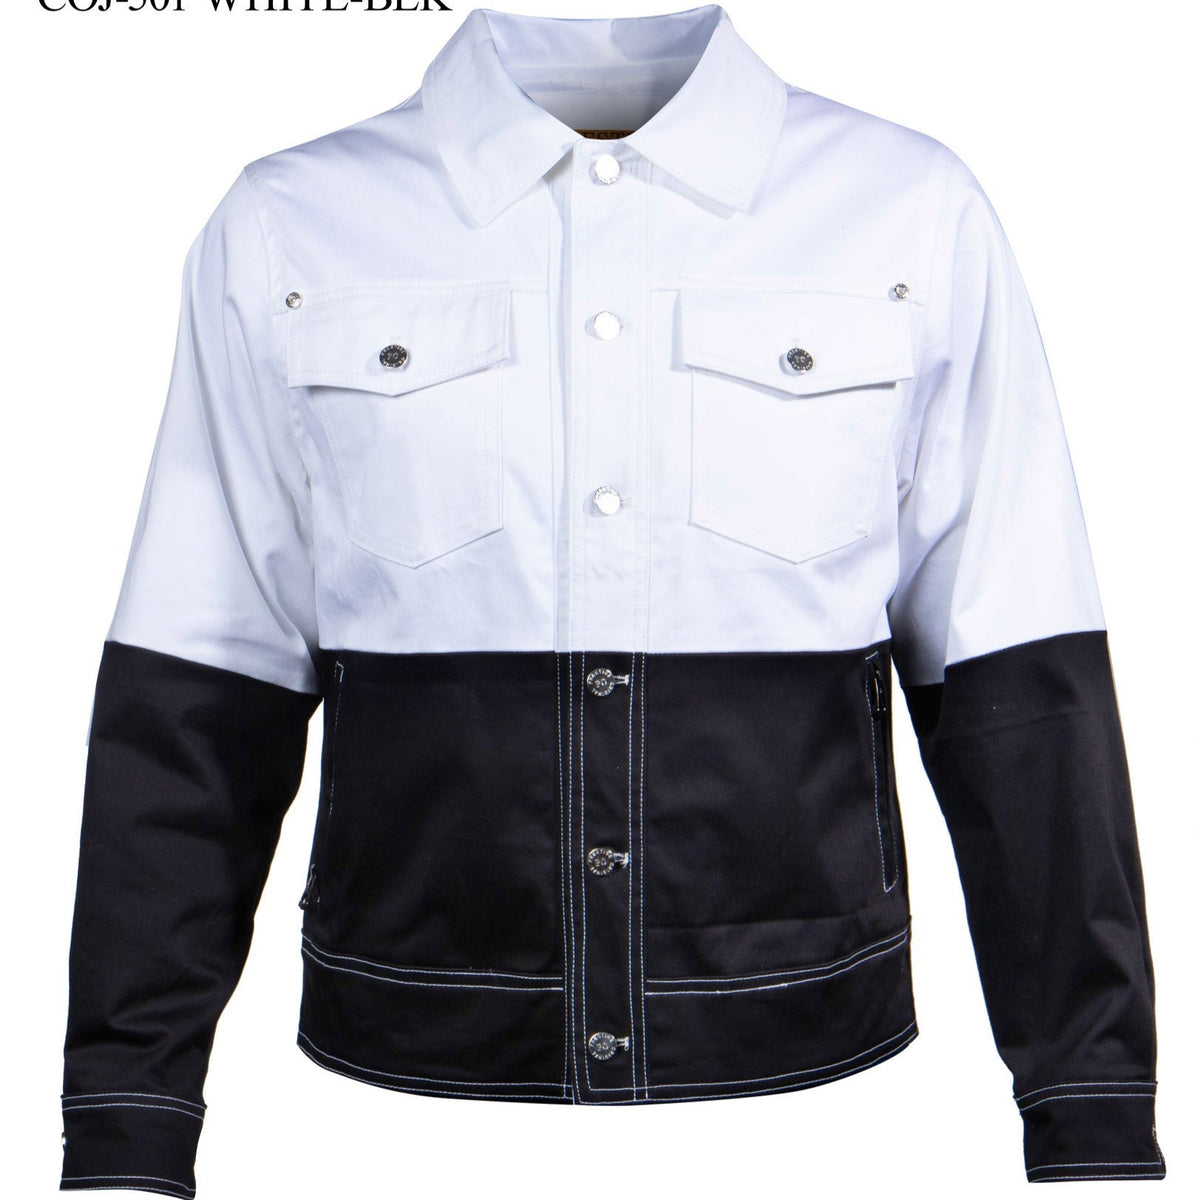 Prestige White/Black Double Stitched Jacket - Dudes Boutique